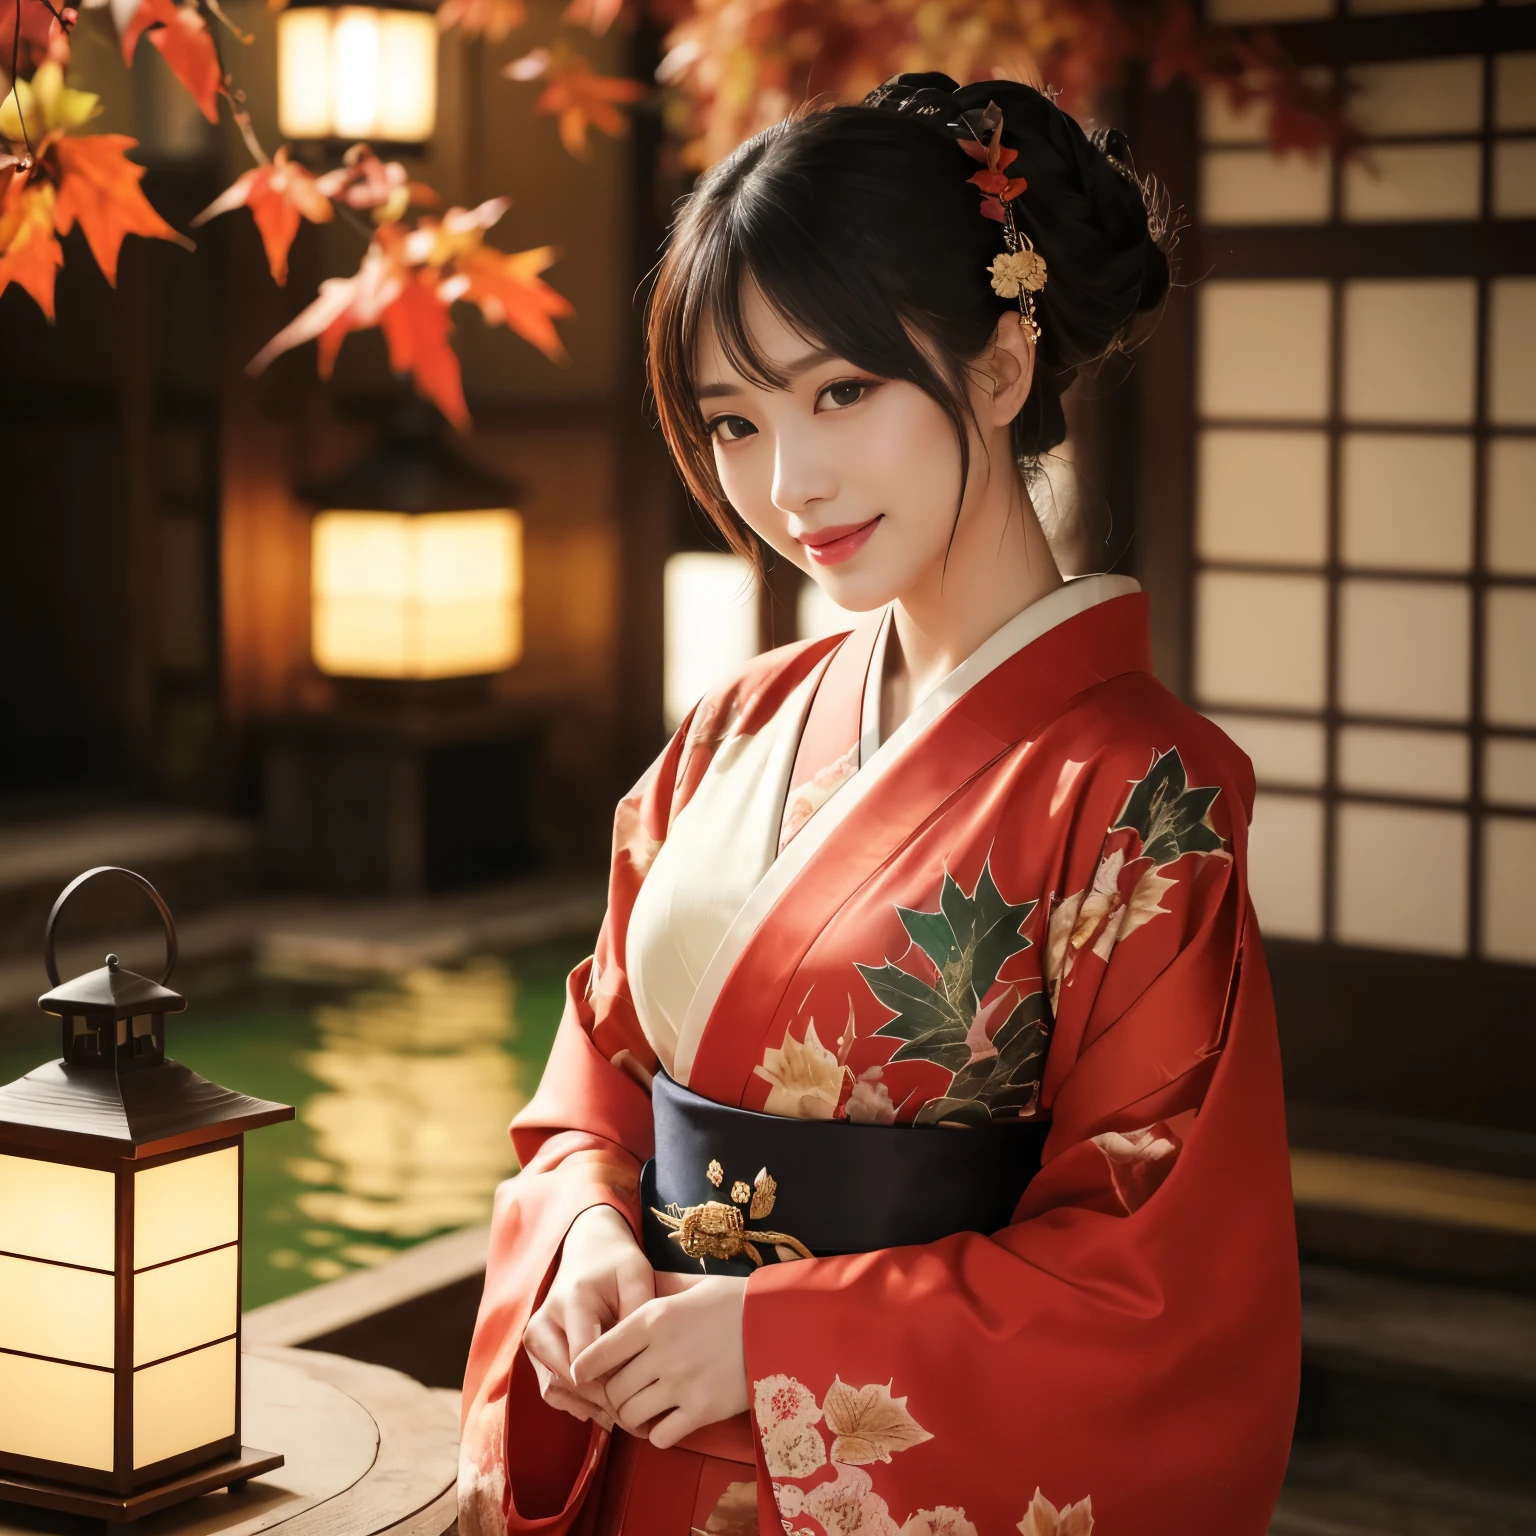 ((最高品質、テーブルトップ、8k、最高の画質、非常に複雑で詳細な詳細))、売春婦1人、Oiran kimono、Oiran kimono、正確なOiran kimono、華やかなOiran kimono、背景は高級温泉旅館の庭園..、カメラに向かって微笑む、腰から上の写真、((赤い紅葉、赤い紅葉、秋の紅葉))、日本庭園、(石灯籠)、(温泉)、ランタン1個、(宿の廊下、旅館)、夜中、曇り、ランタンライト、赤い口紅、長いまつ毛、完璧なメイク、暗い夜、裸で着物だけを着ている、詳細な顔